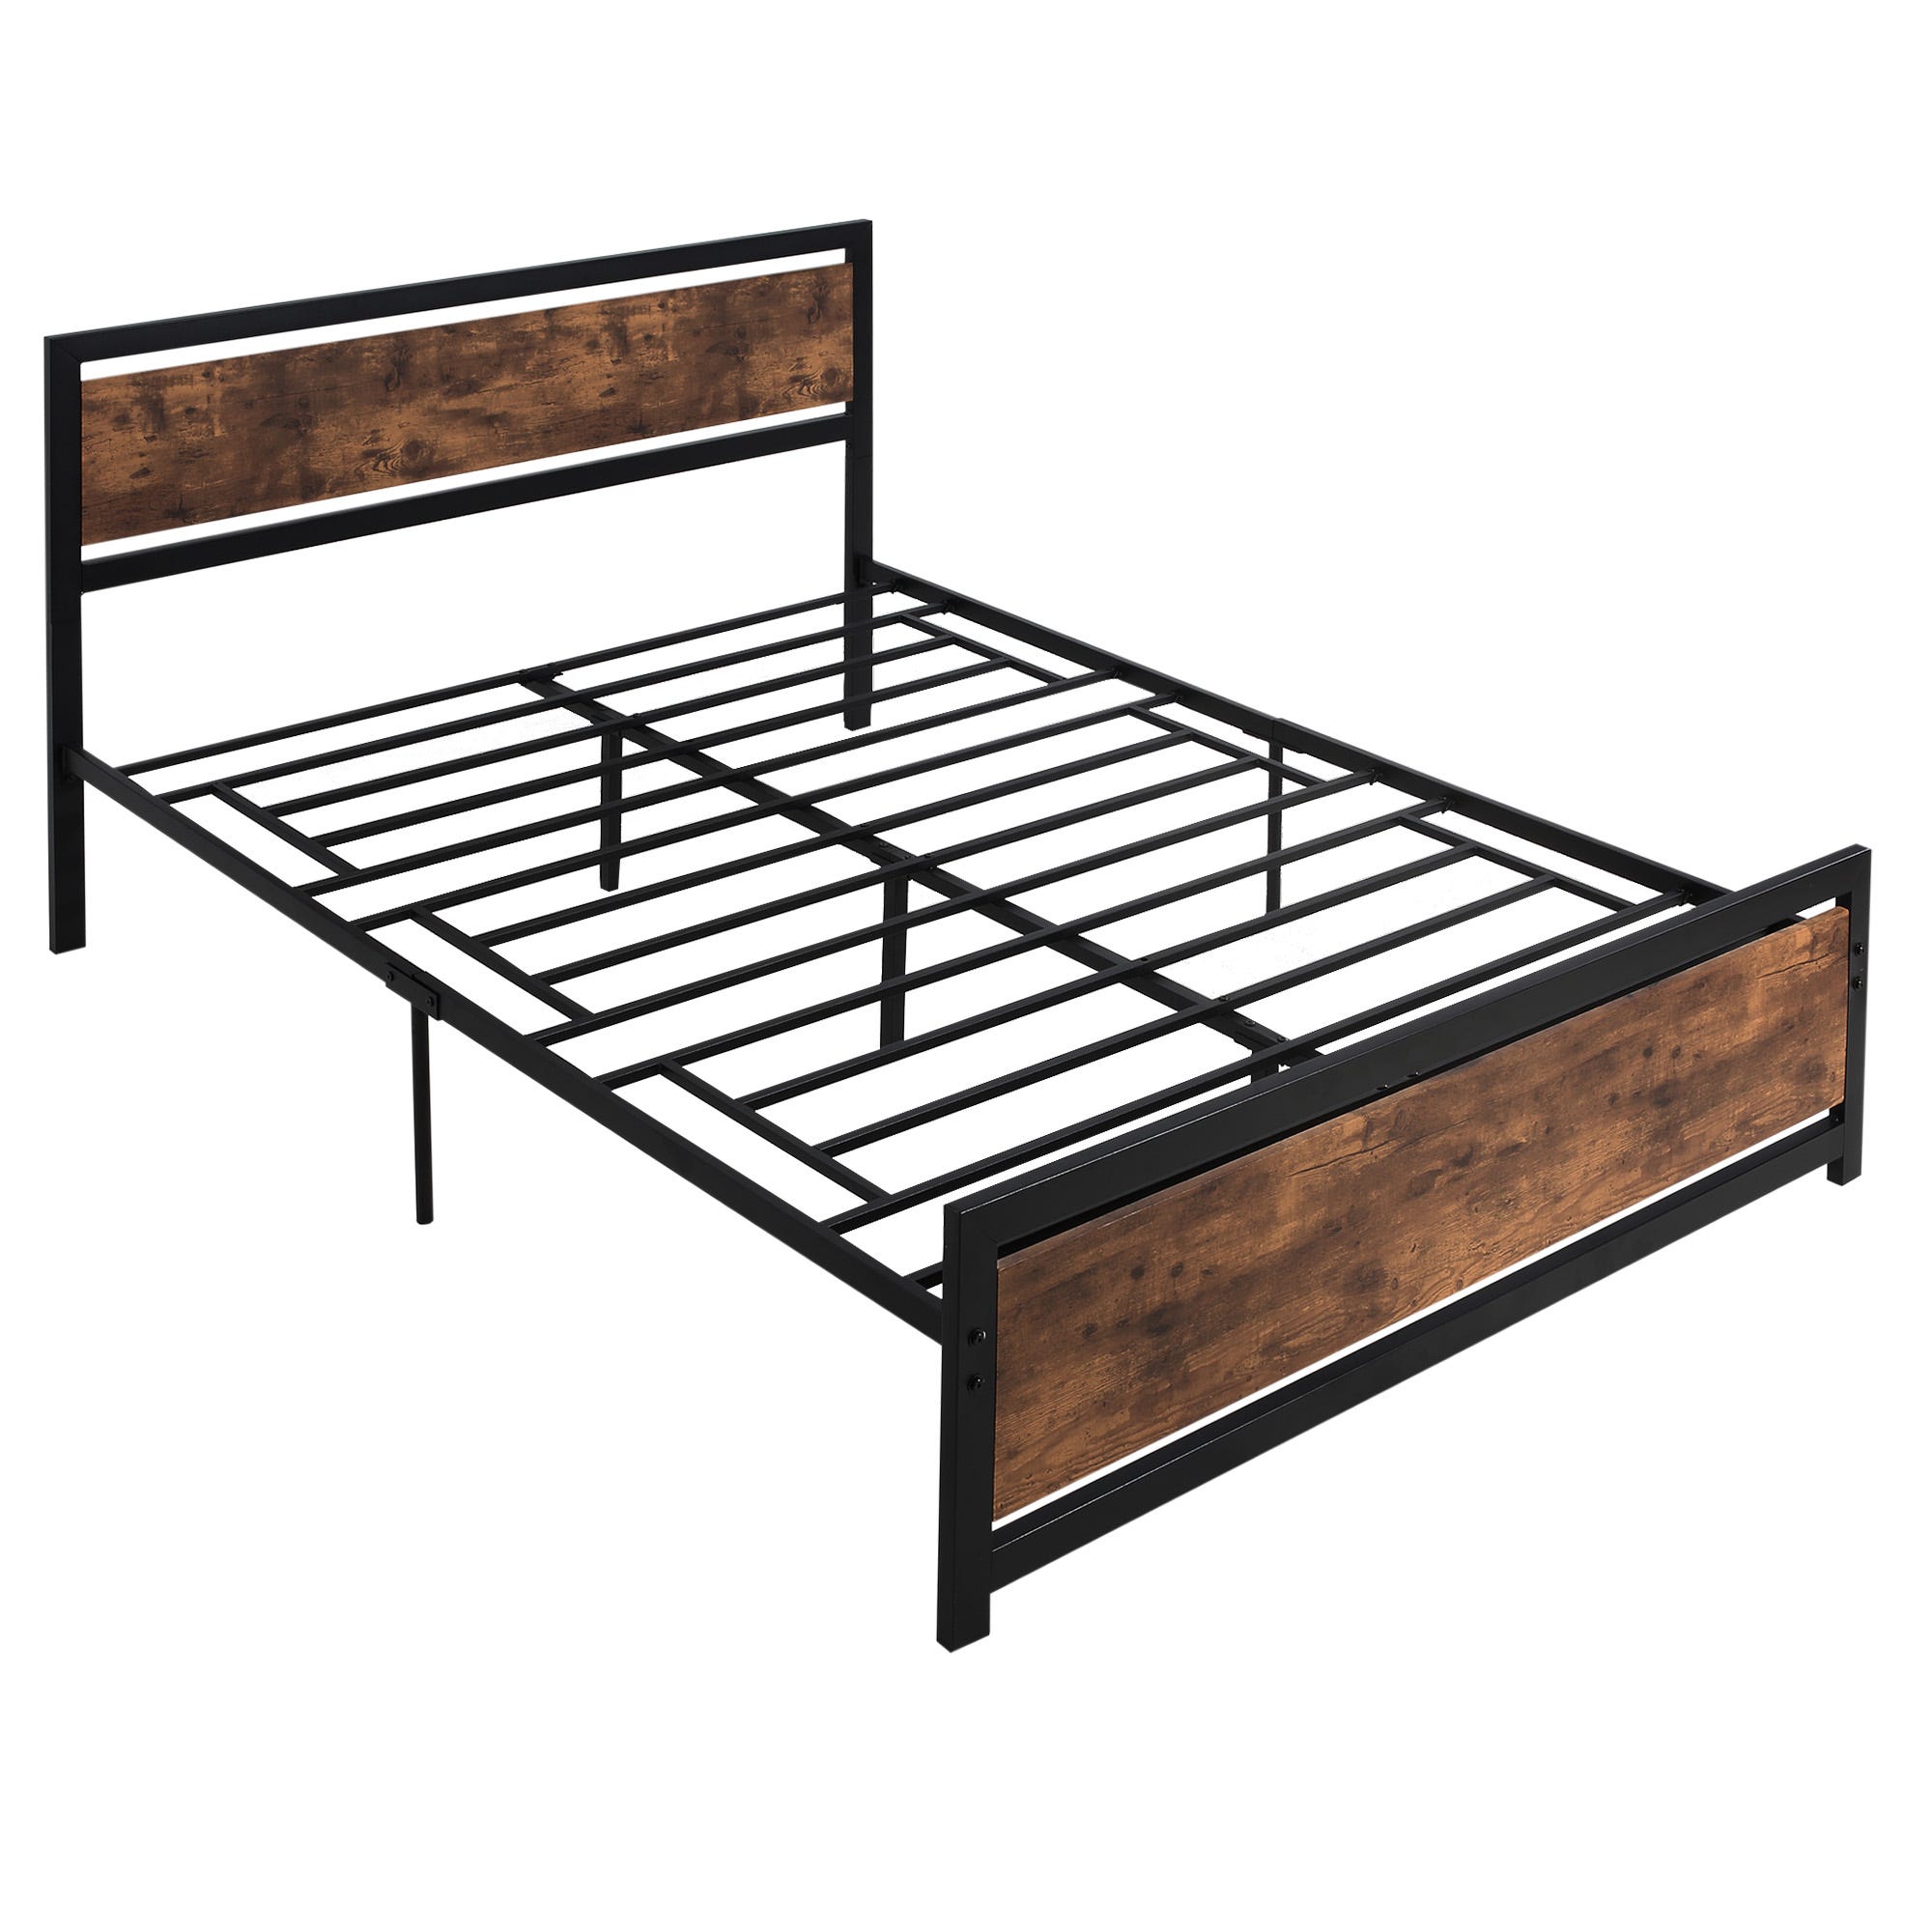 Cabecero cama de 135 estilo rustico industrial madera metal